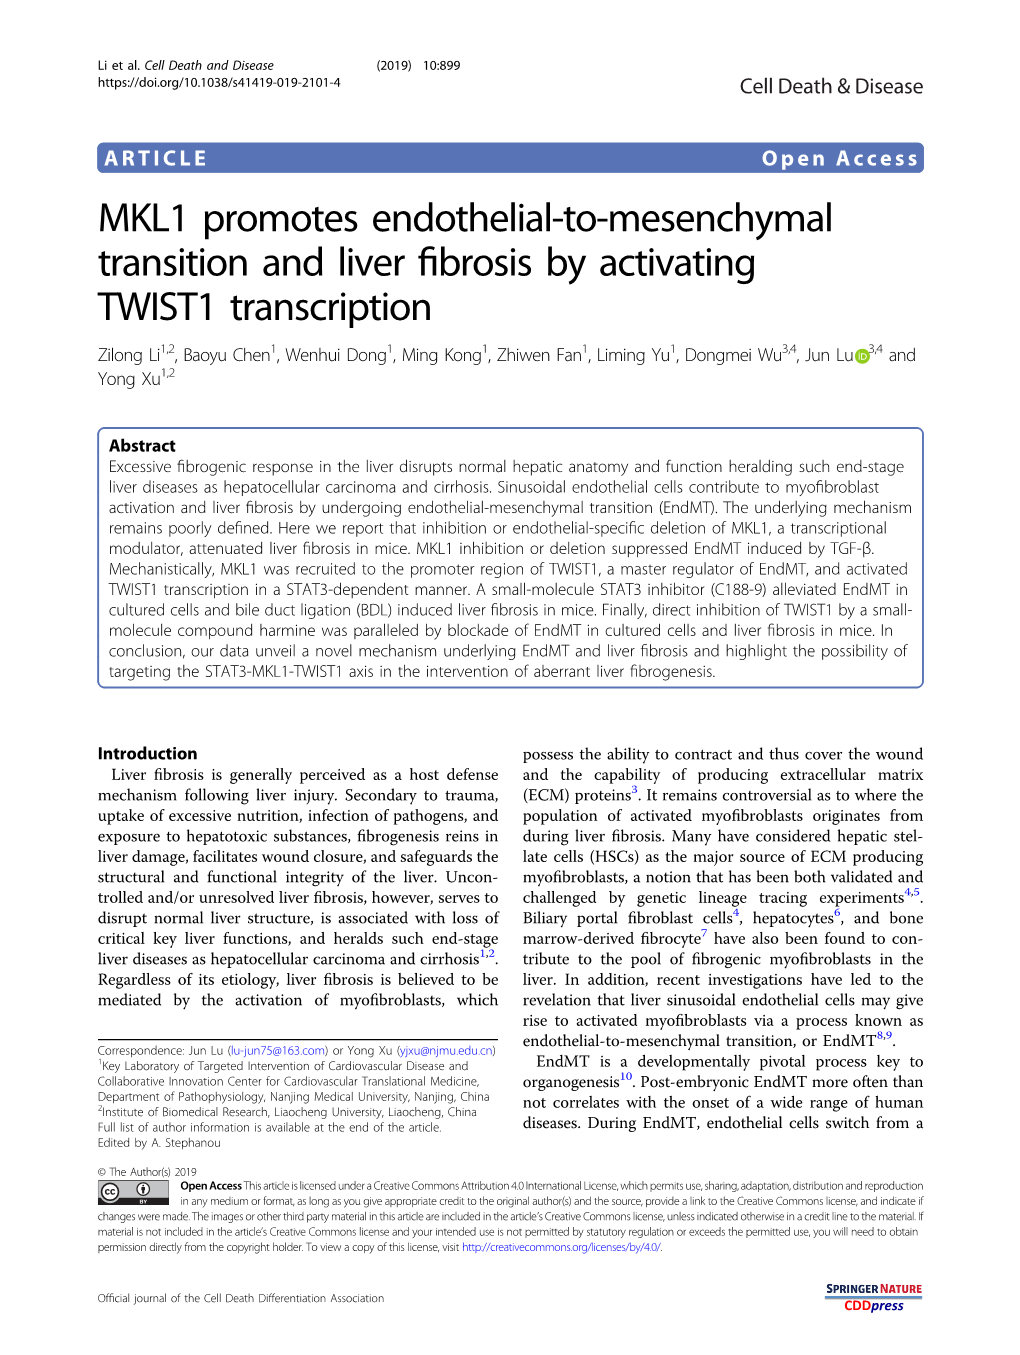 MKL1 Promotes Endothelial-To-Mesenchymal